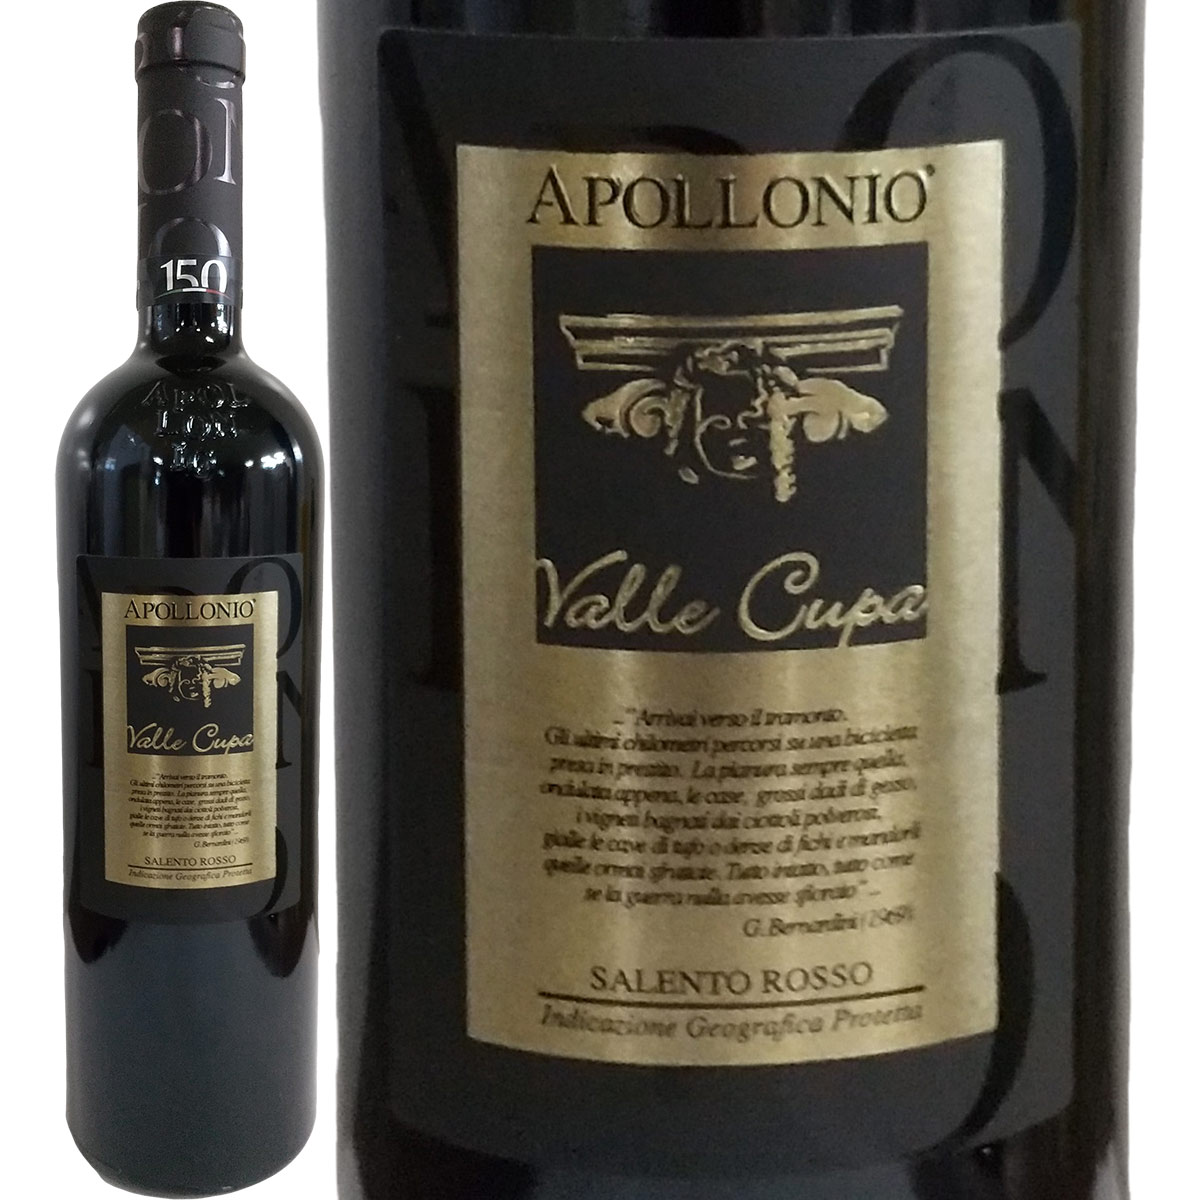 アッポローニオ・ヴァッレ・クーパ 2013【イタリア】【赤ワイン】【750ml】【フルボディ】【辛口】